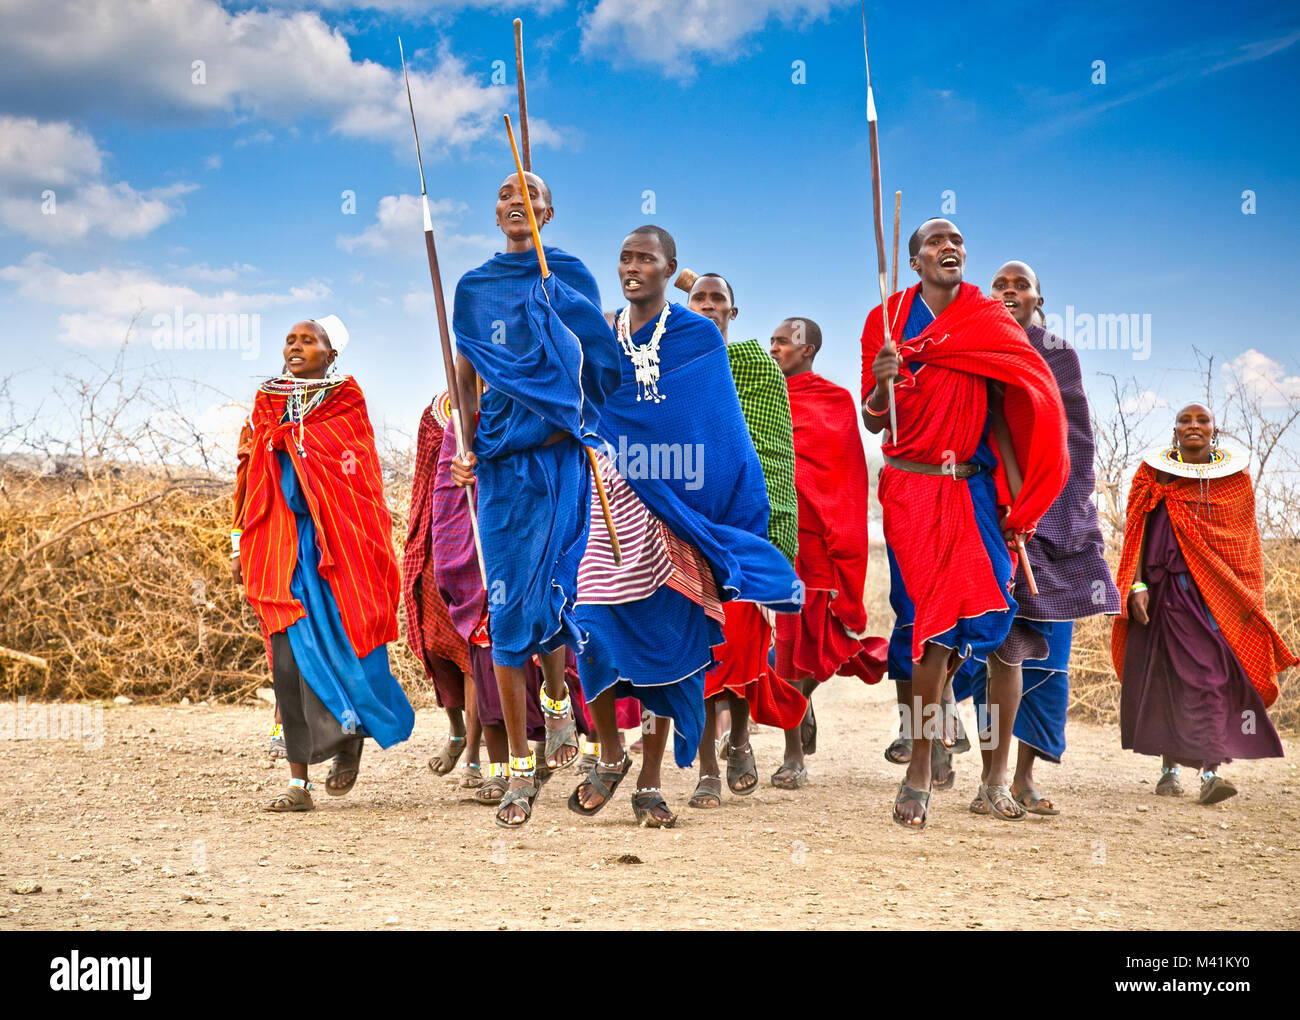 Tansania, Afrika - Februar 9, 2014: Masai Krieger tanzen traditionelle Sprünge, wie kulturelle Zeremonie, Überprüfung des täglichen Lebens der Menschen vor Ort Am 9. Stockfoto